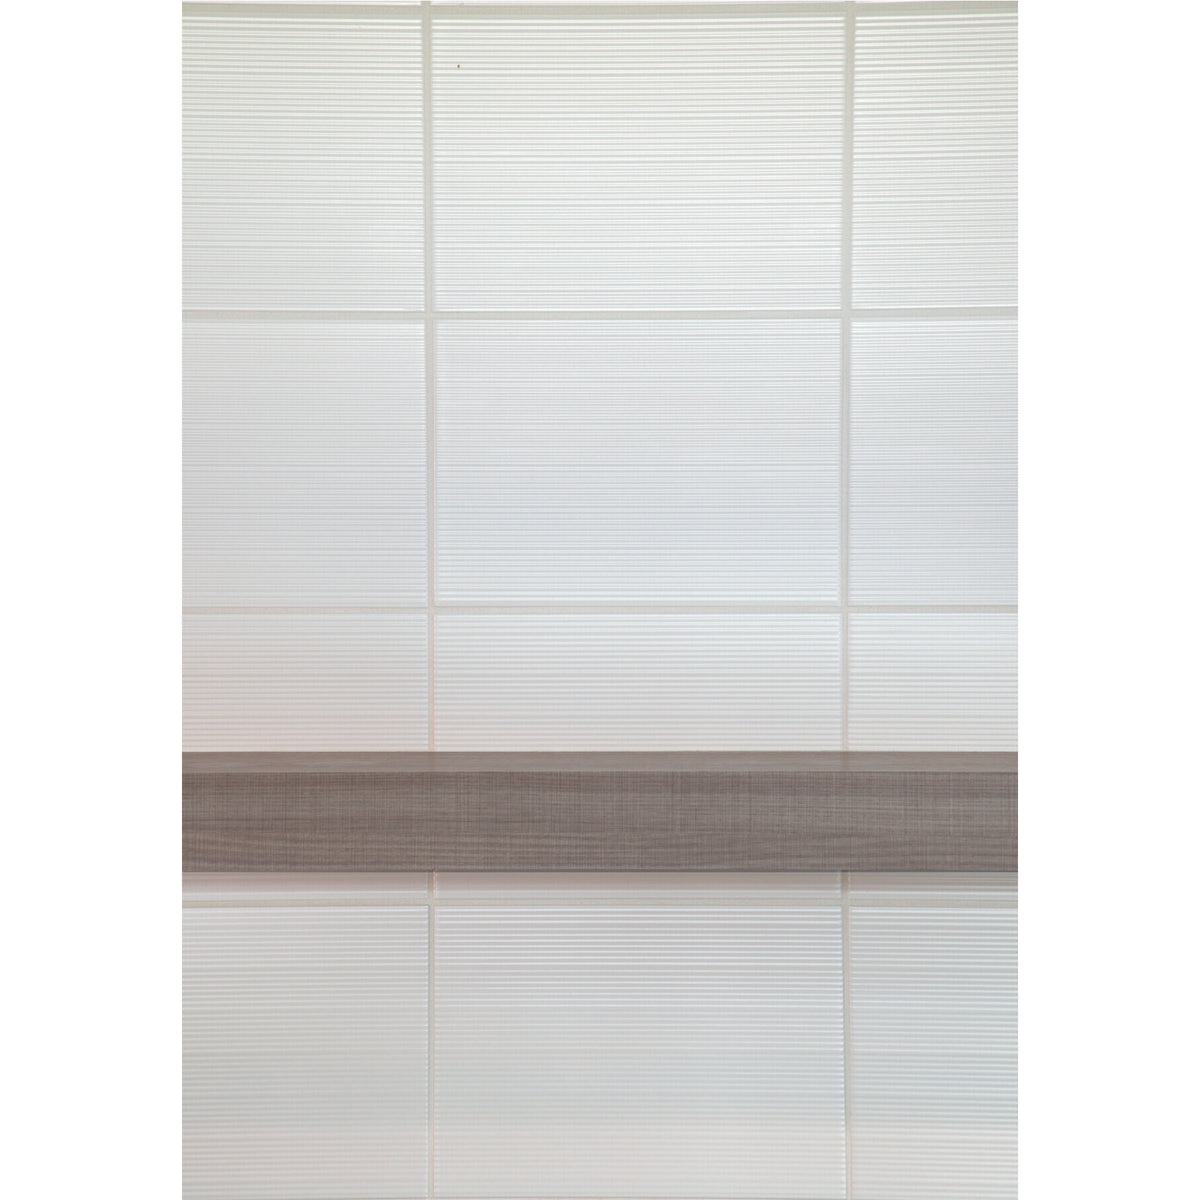 Daltile - Aviano - 10 in. x 14 in. Glazed Ceramic Wall Tile - Verona White Close View